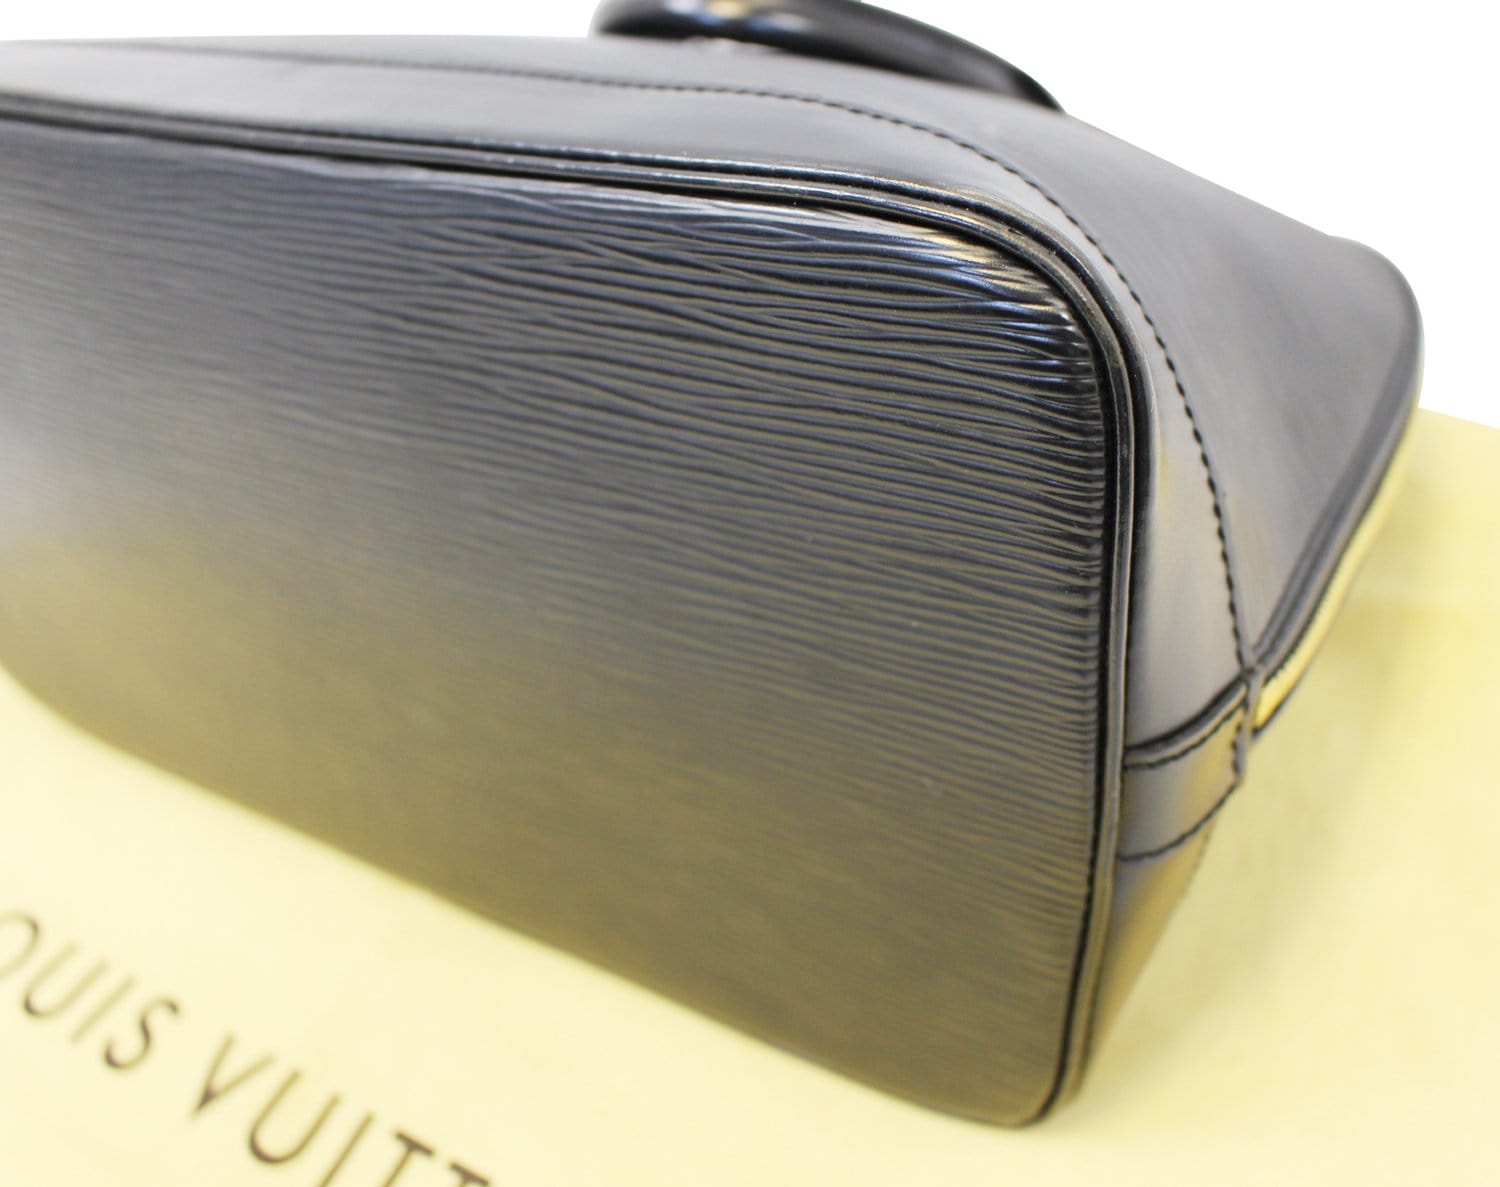 Authentic Louis Vuitton Black Epi Leather Alma PM Hand Bag – Paris Station  Shop